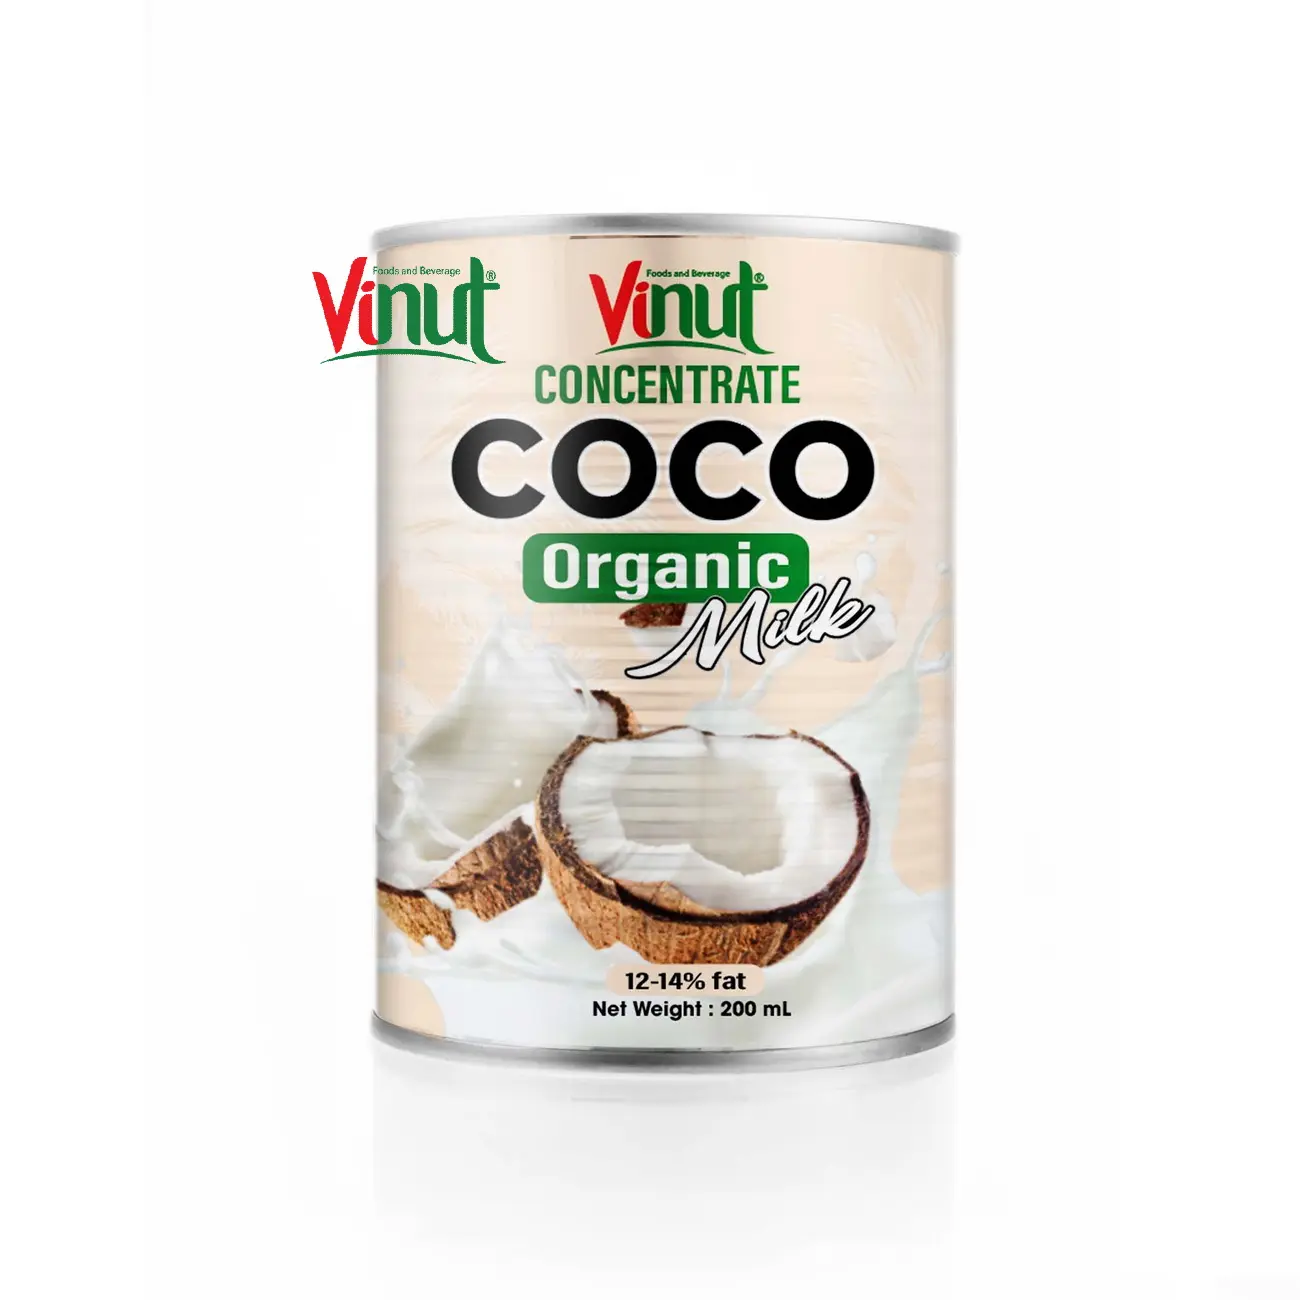 VINUTココナッツミルク-200mlはココナッツミルクオーガニック (脂肪12-14%) サプライヤーとメーカーを濃縮できます